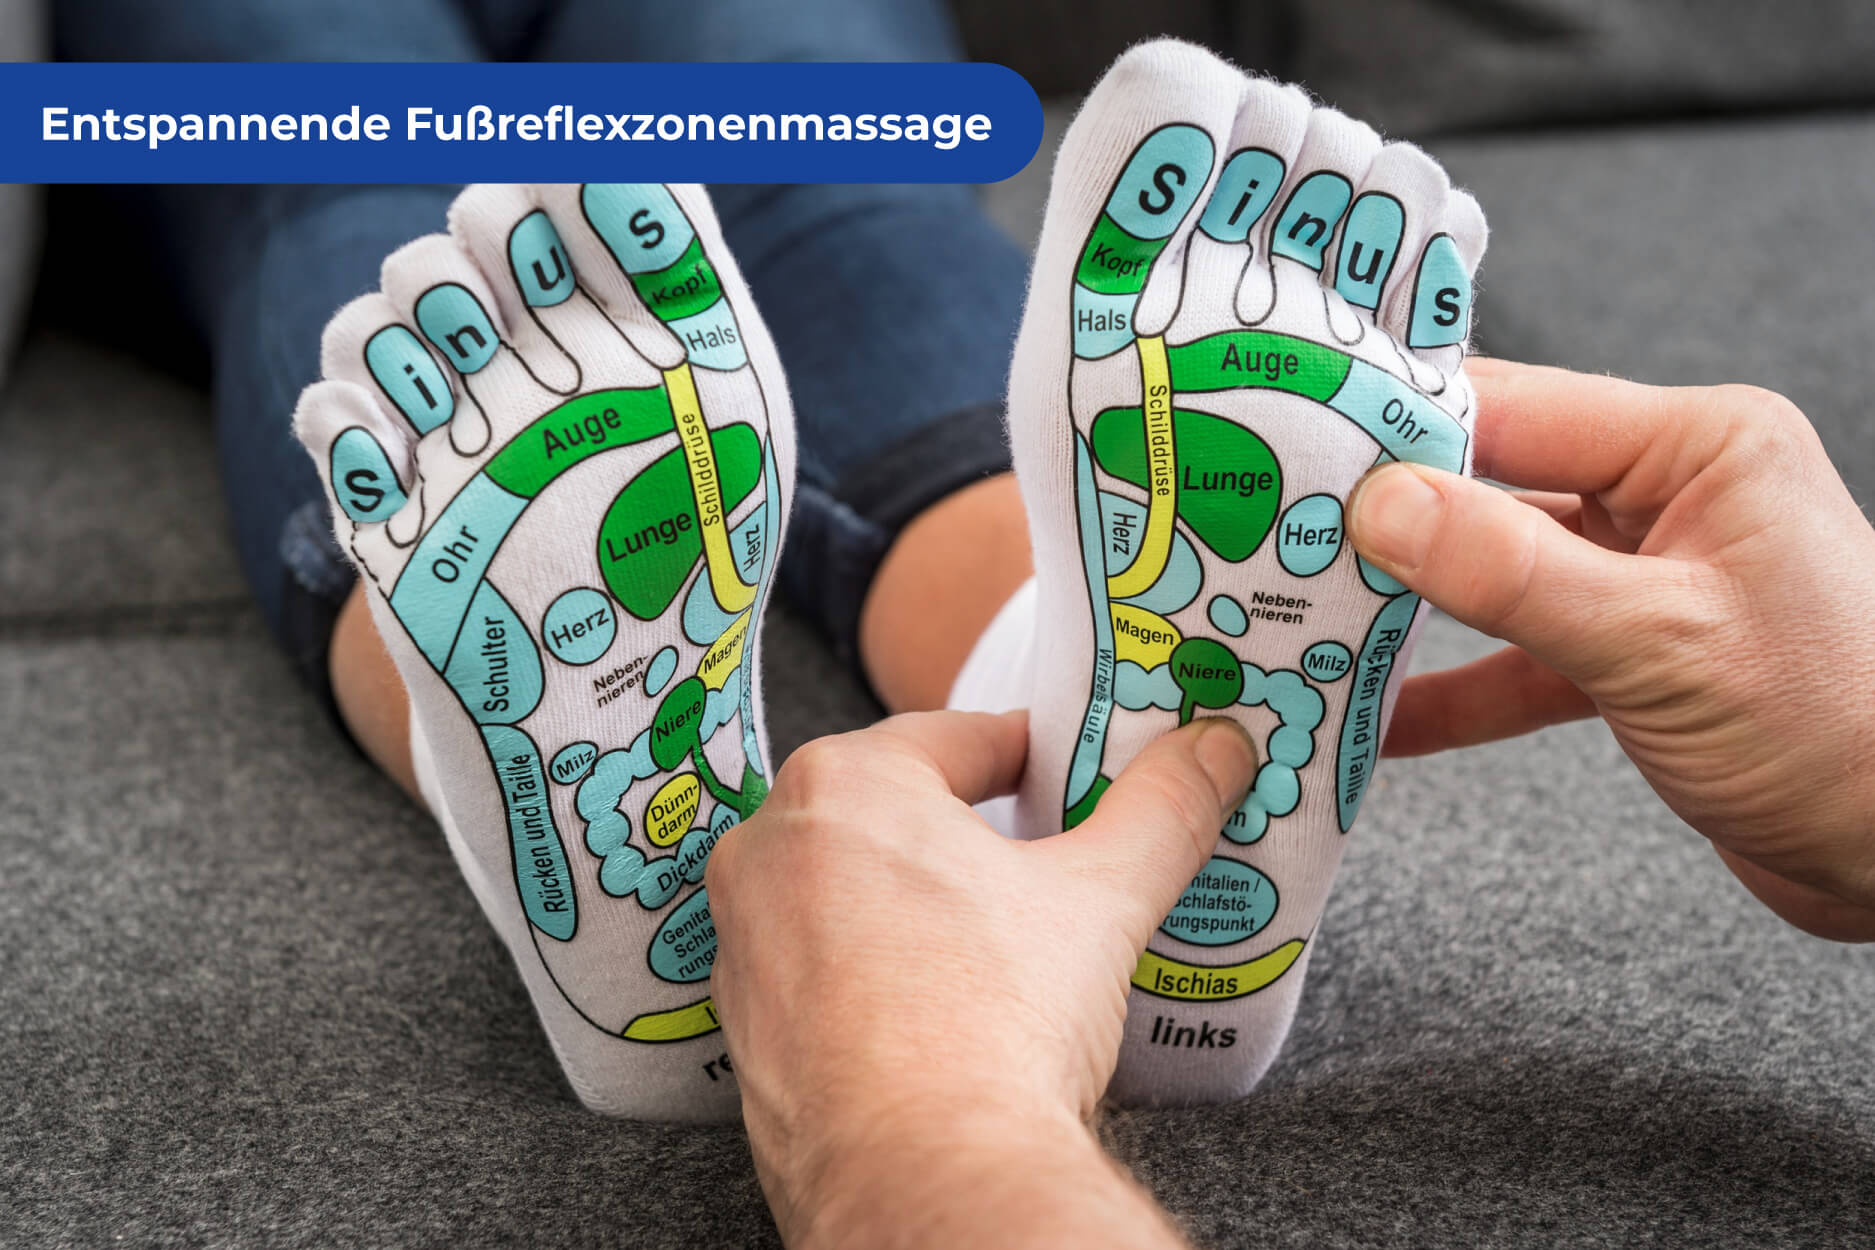 Fußreflexzonen Massage Set mit Massagematte und beschrifteten Massagesocken, Größe S (36-38)